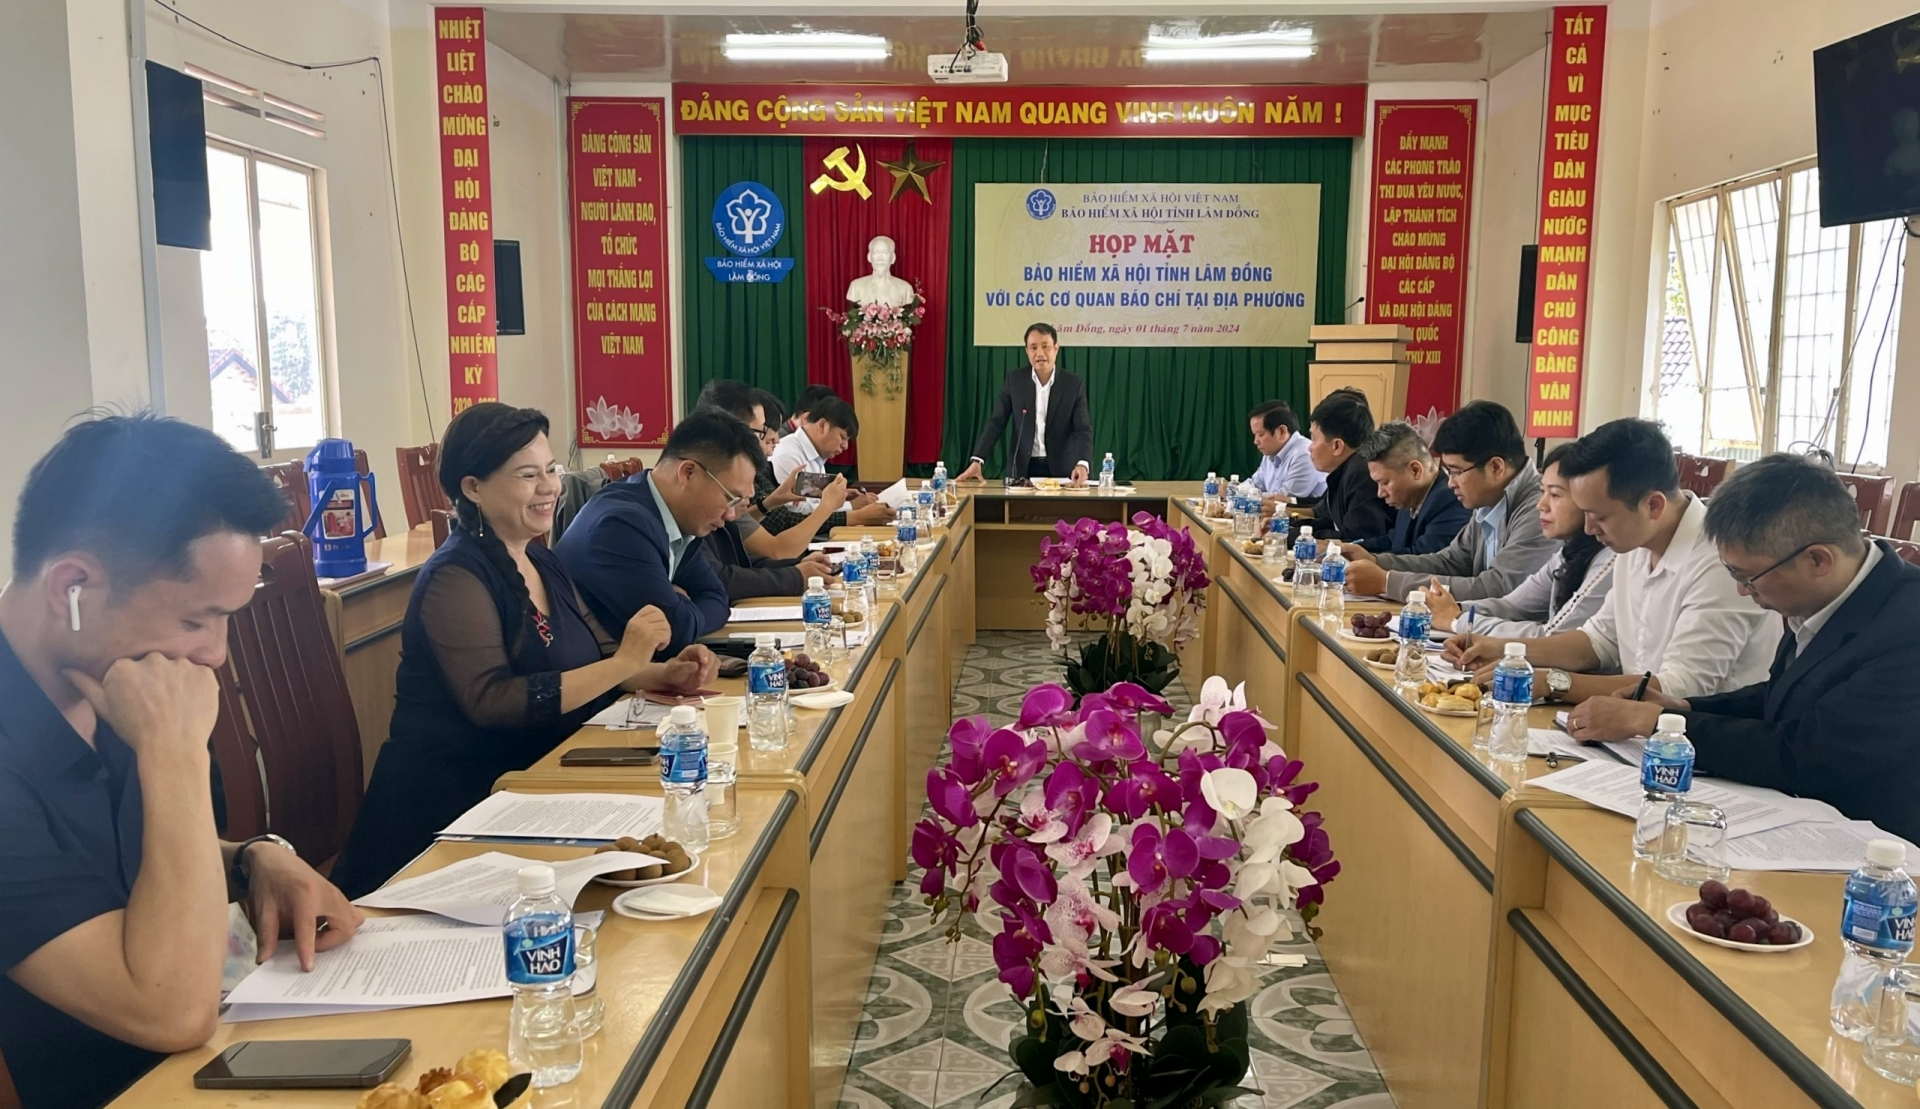 Tăng cường phối hợp giữa Bảo hiểm xã hội tỉnh Lâm Đồng với các cơ quan báo chí tại địa phương